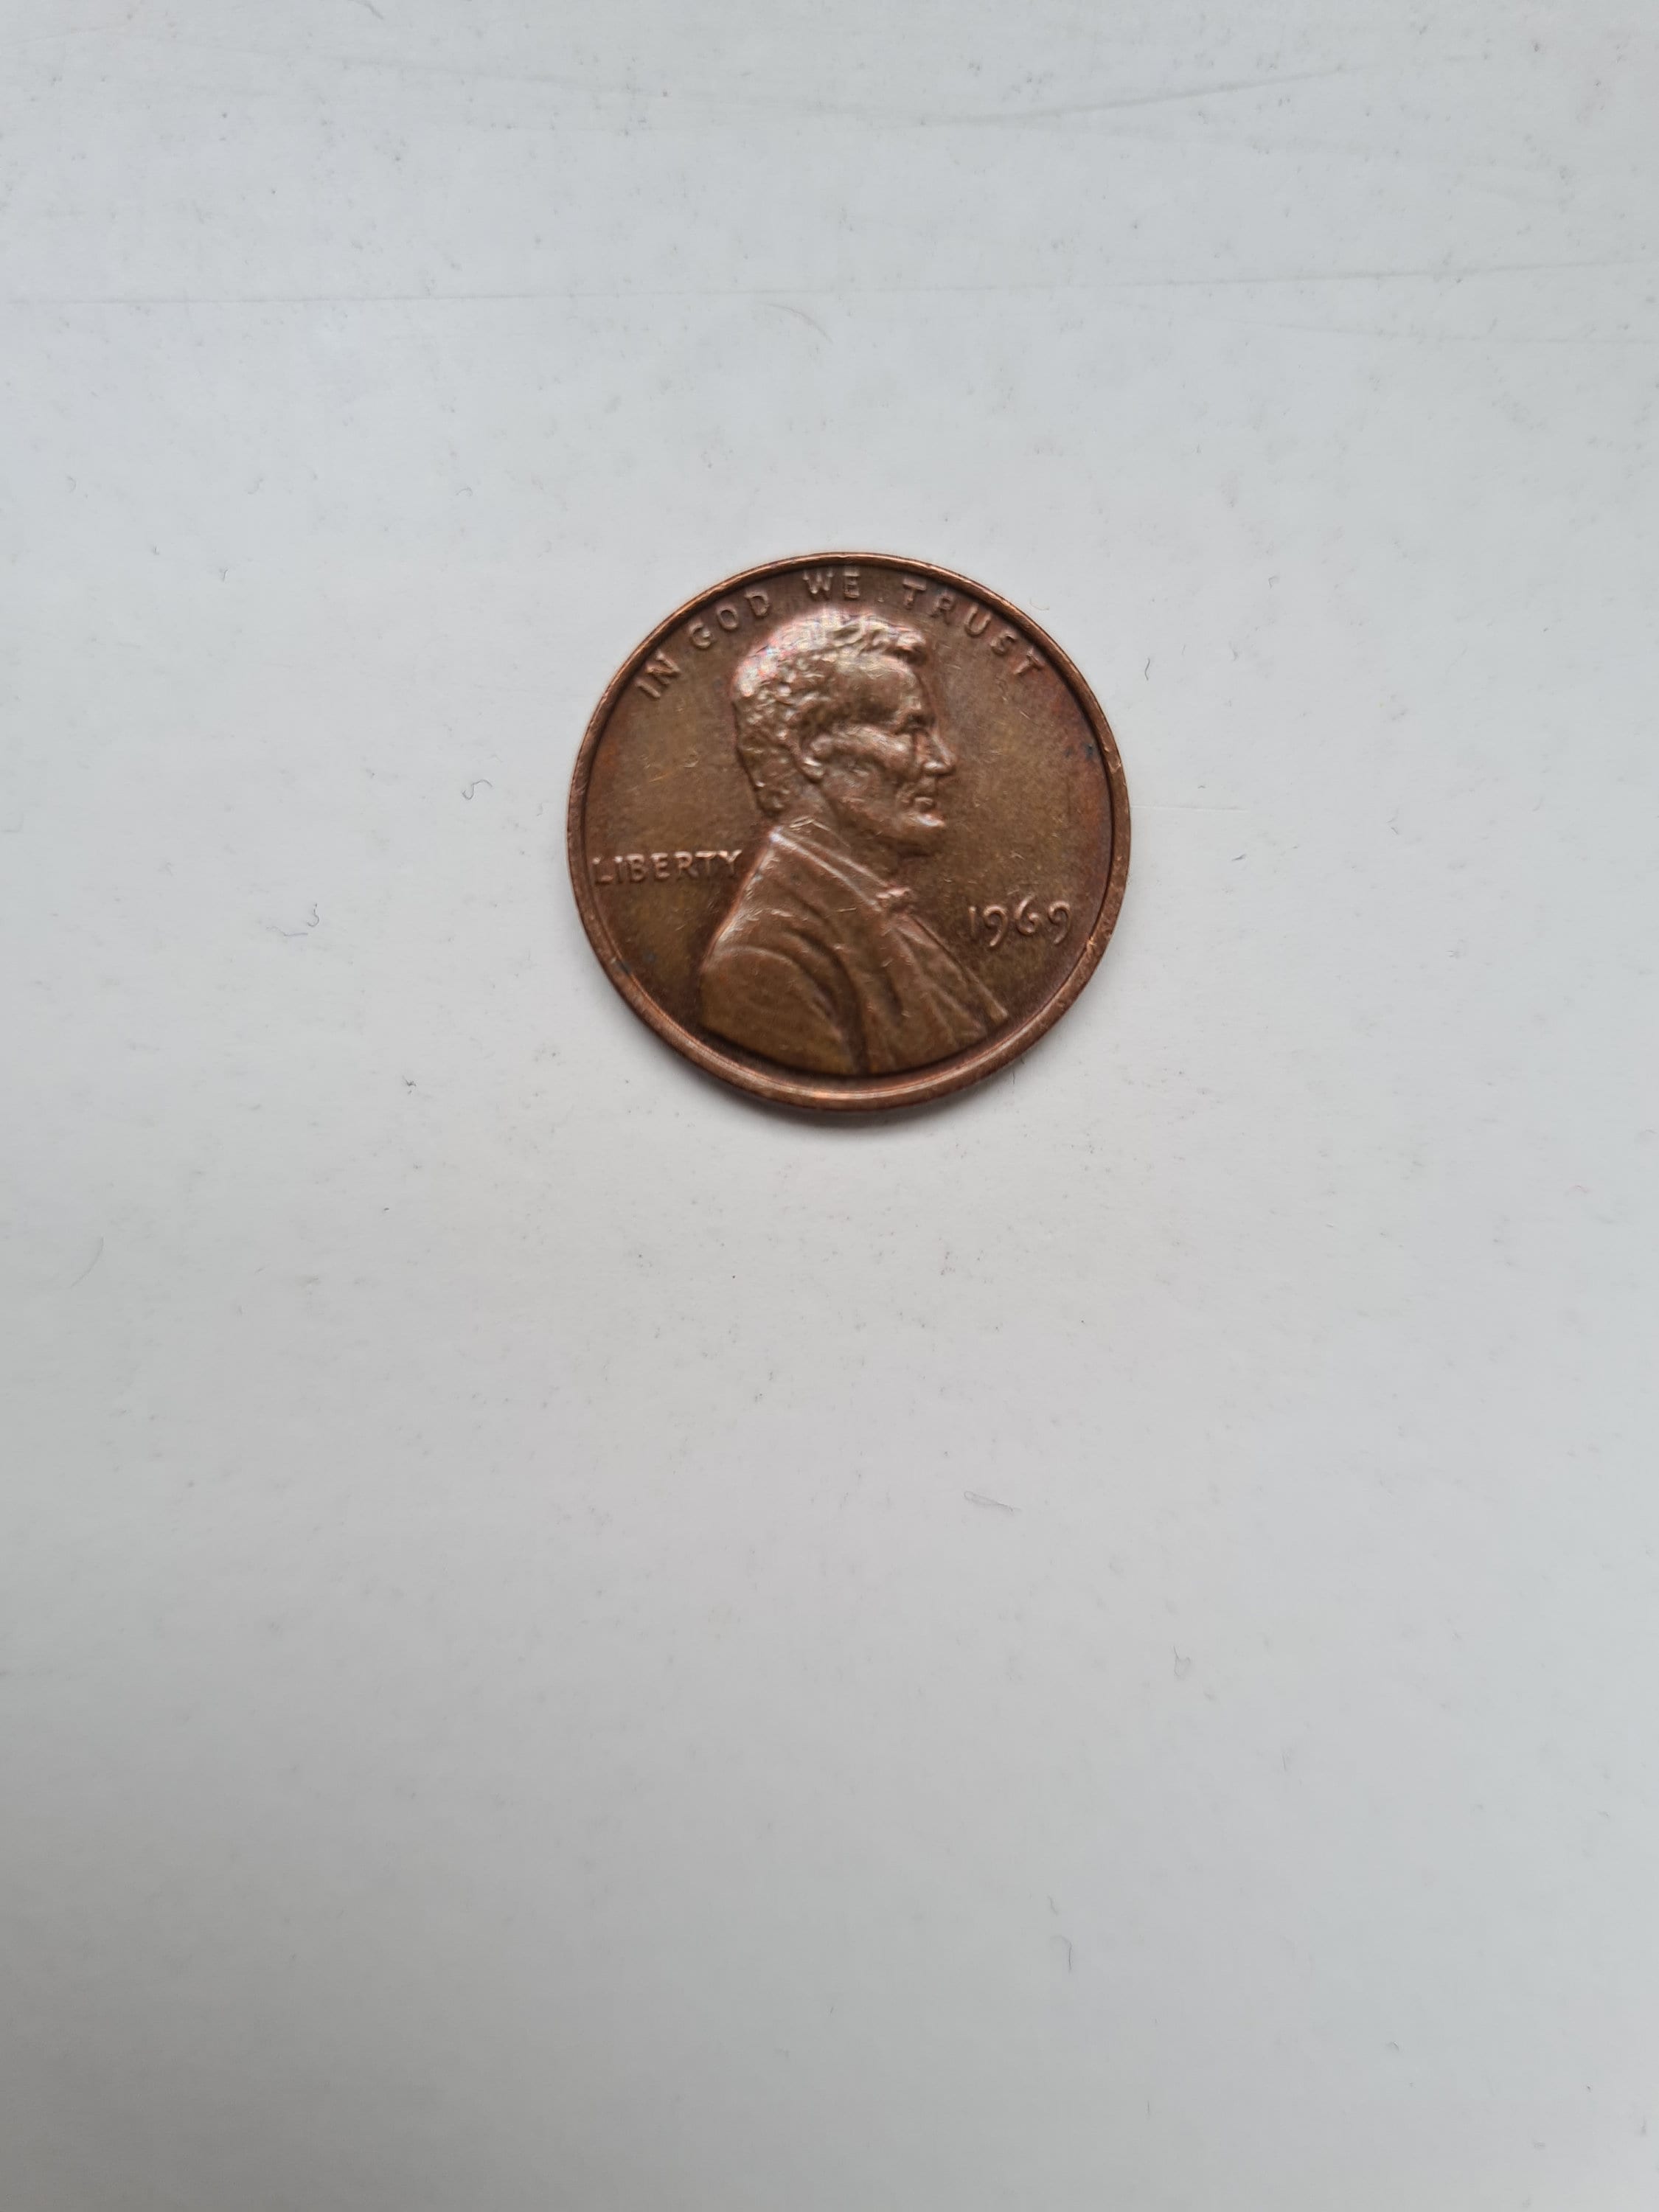 Les pièces de monnaie de Lincoln penny, rares et précieuses, expliquées -  Rosland